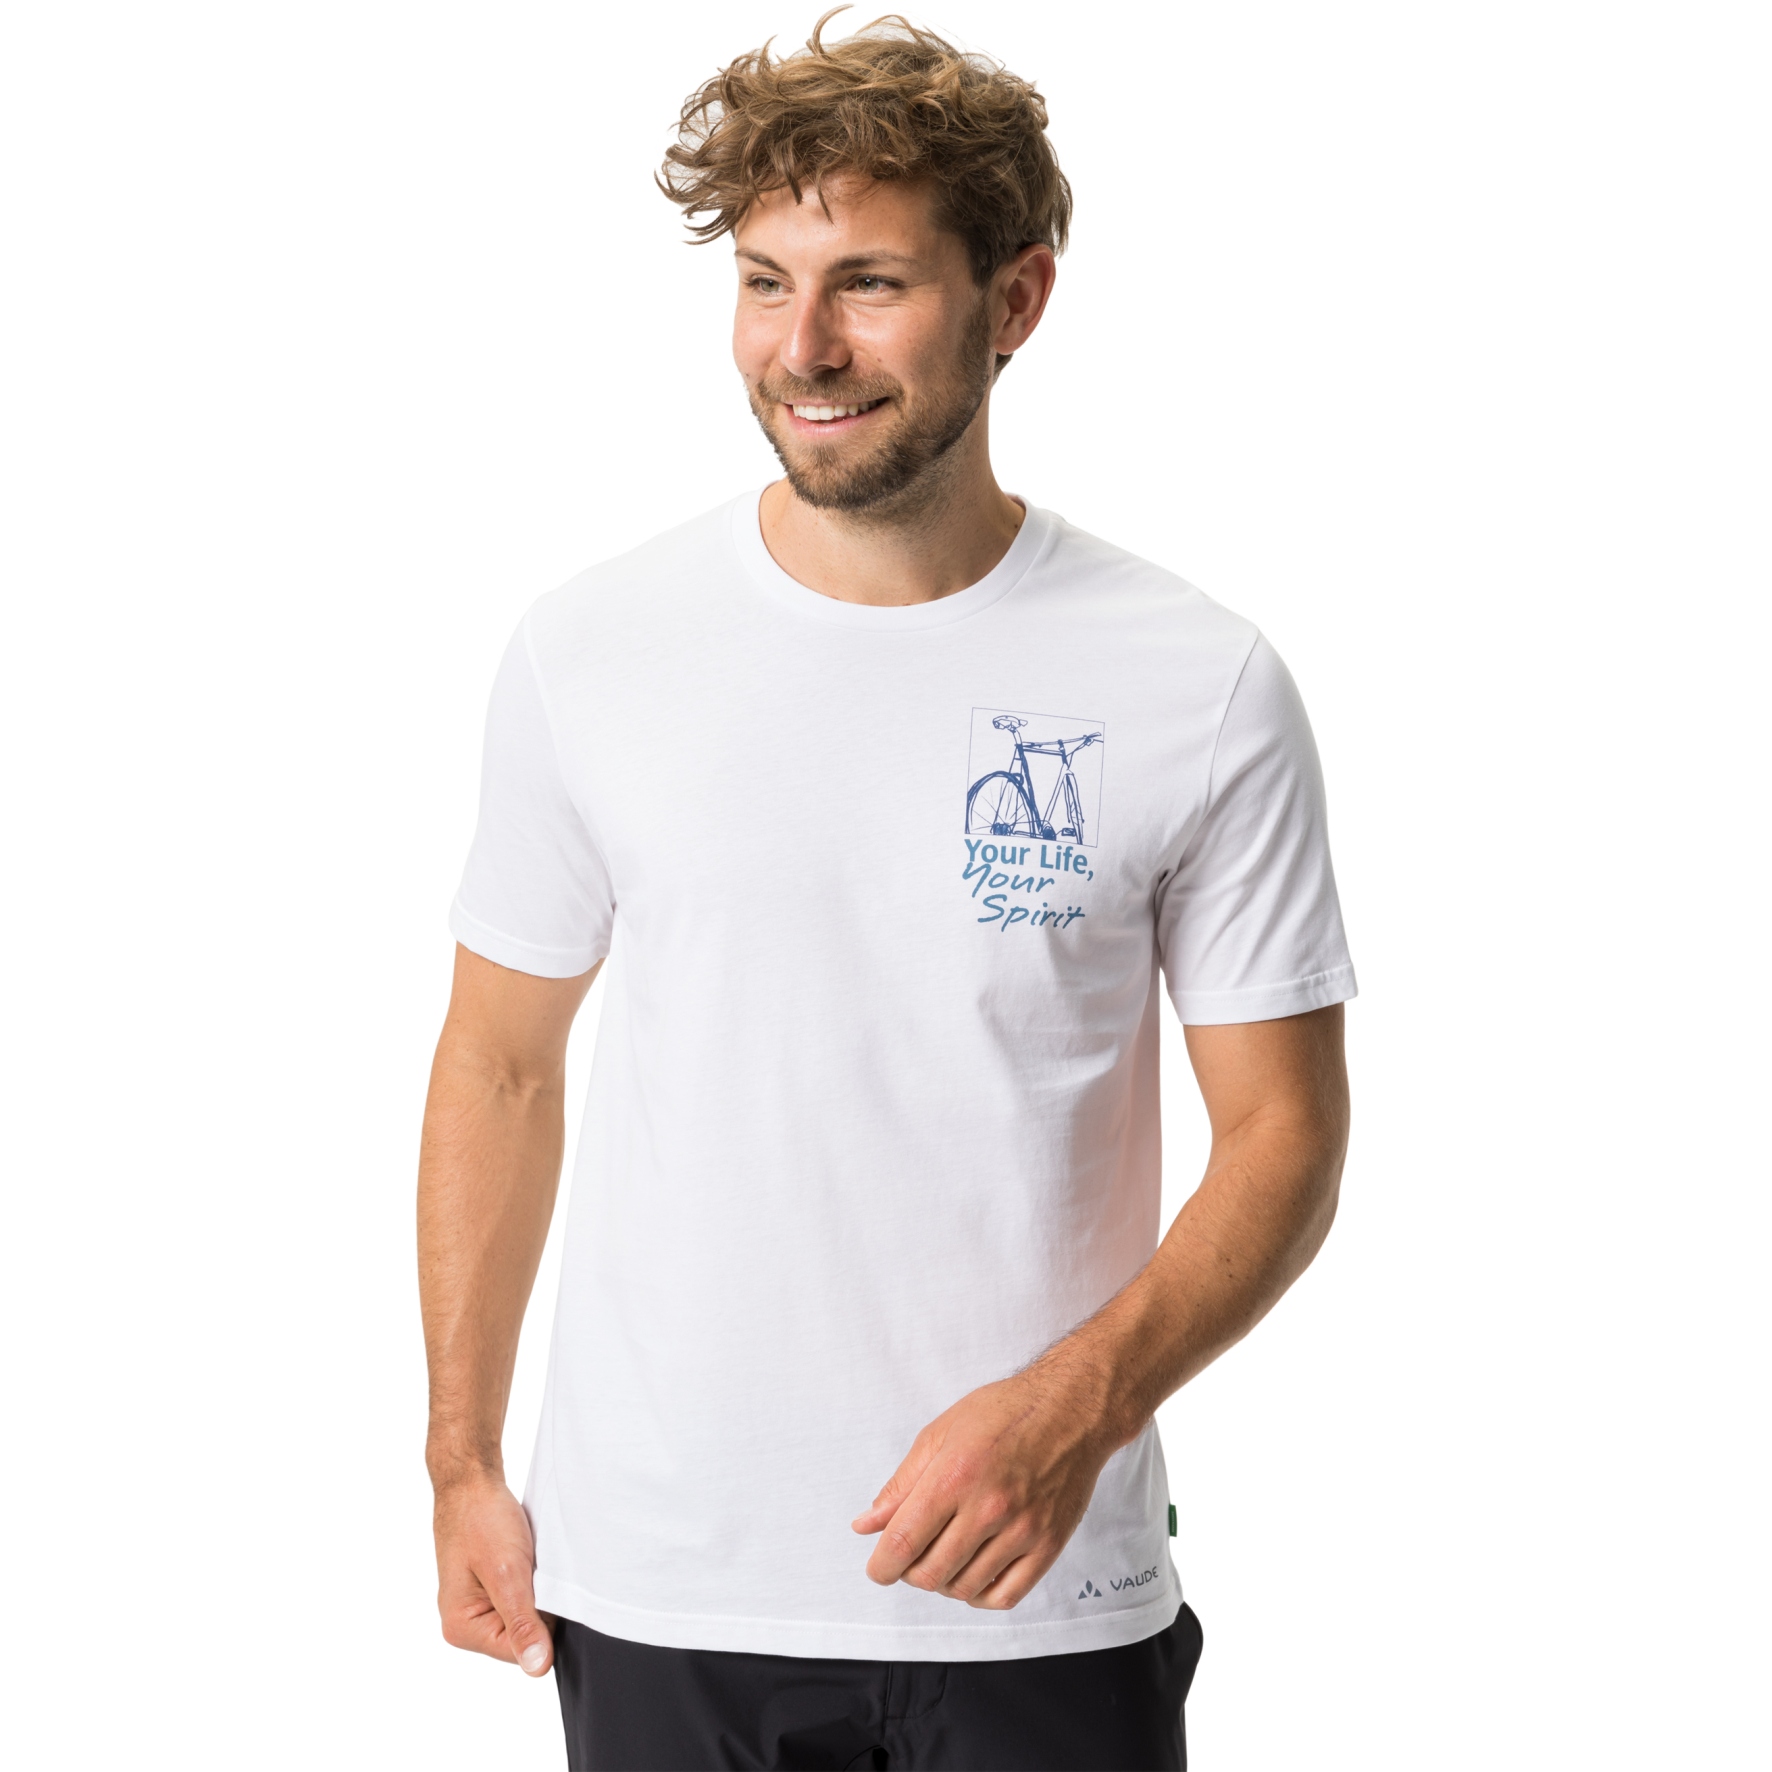 Produktbild von Vaude Spirit T-Shirt - weiß/weiß